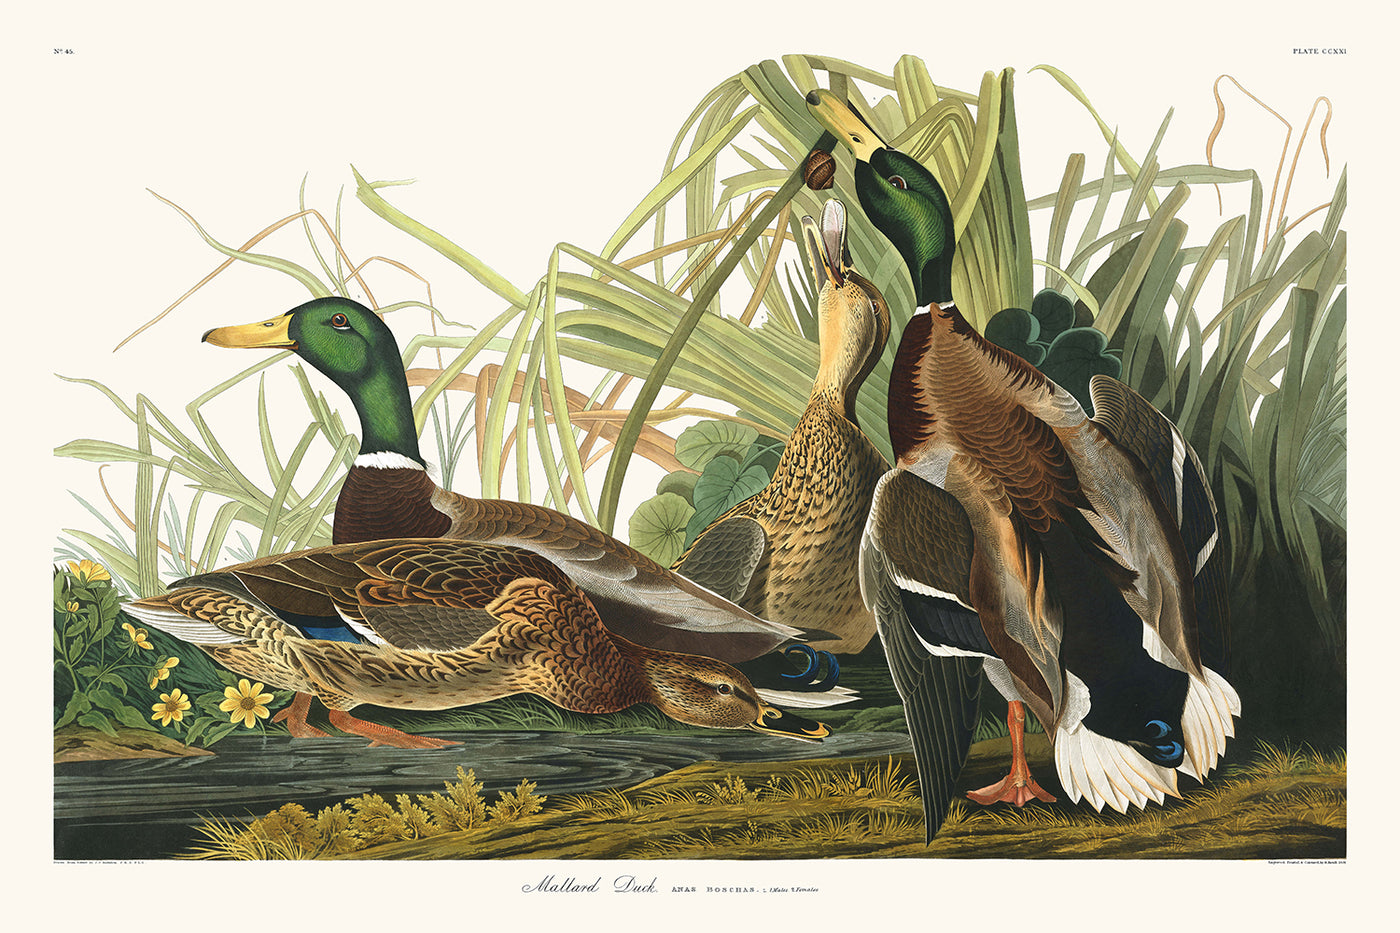 Stockenten von John James Audubon, 1827